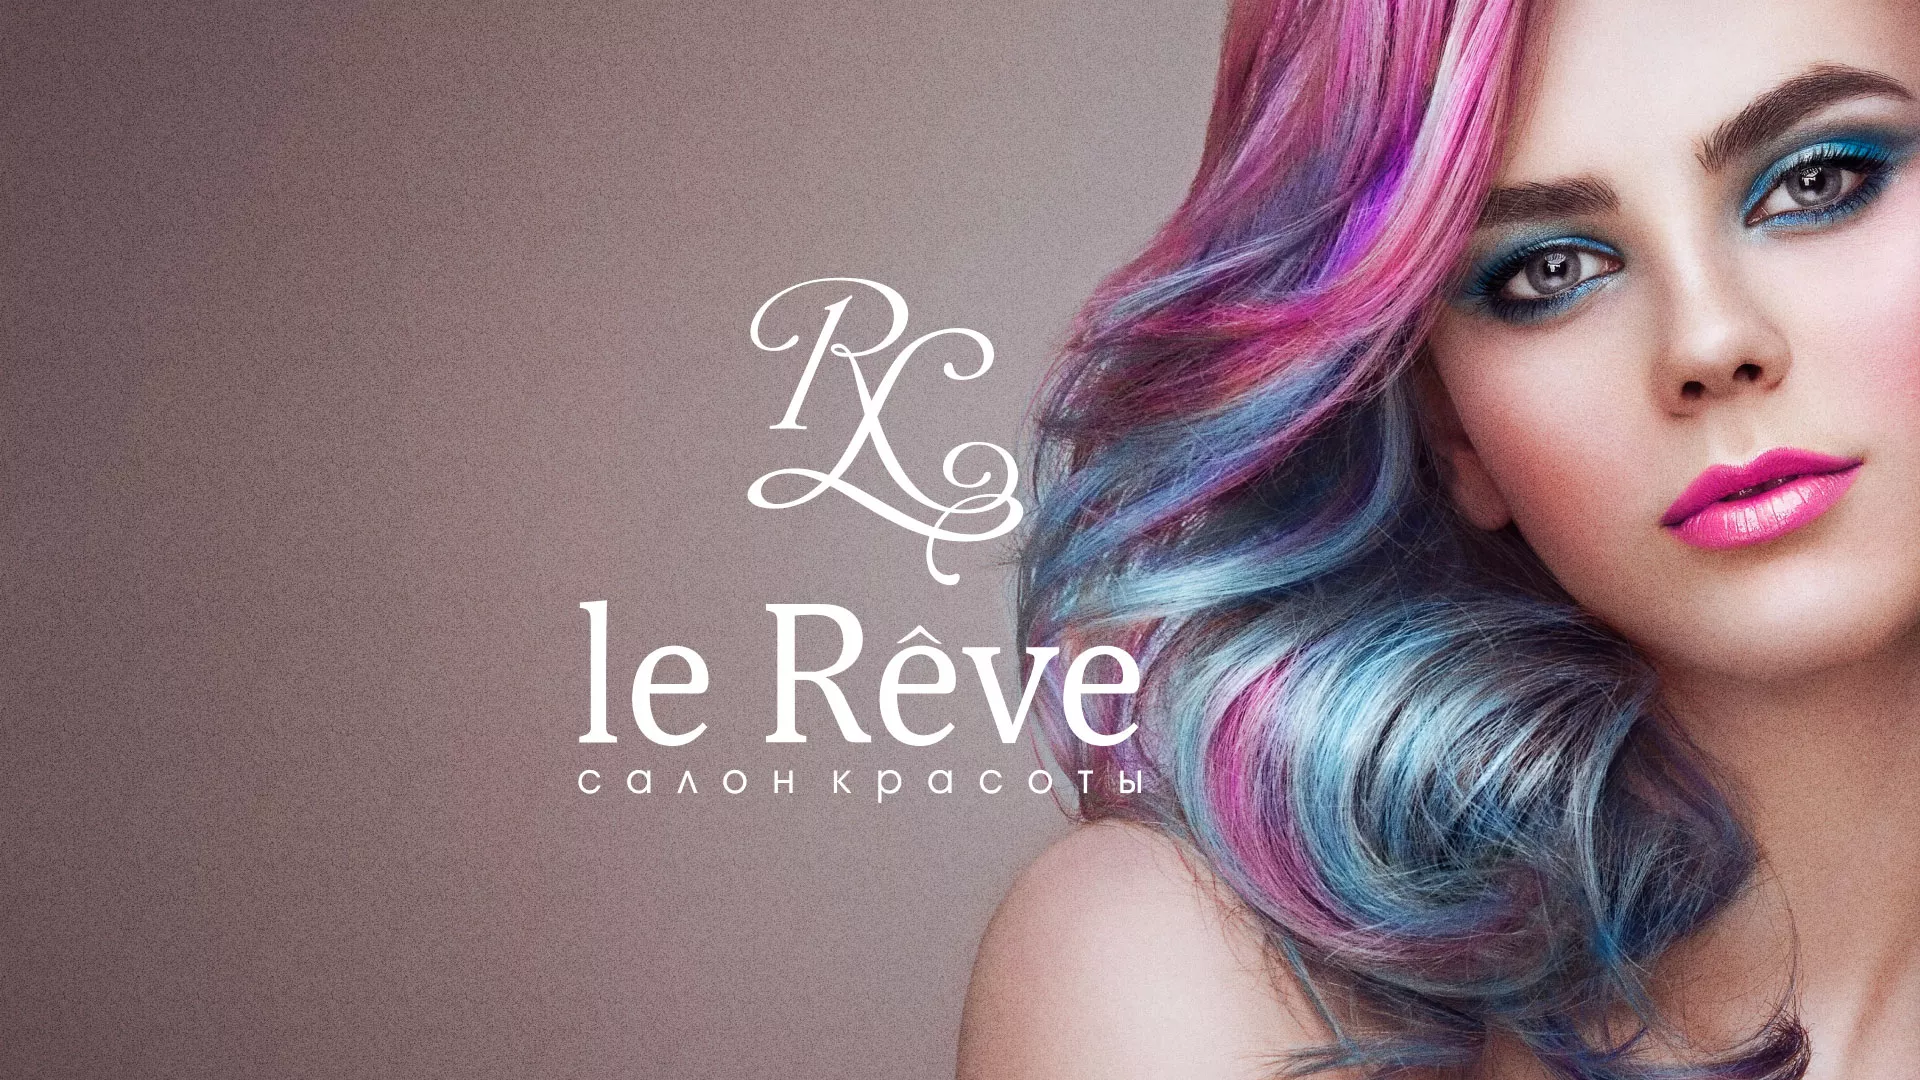 Создание сайта для салона красоты «Le Reve» в Велиже